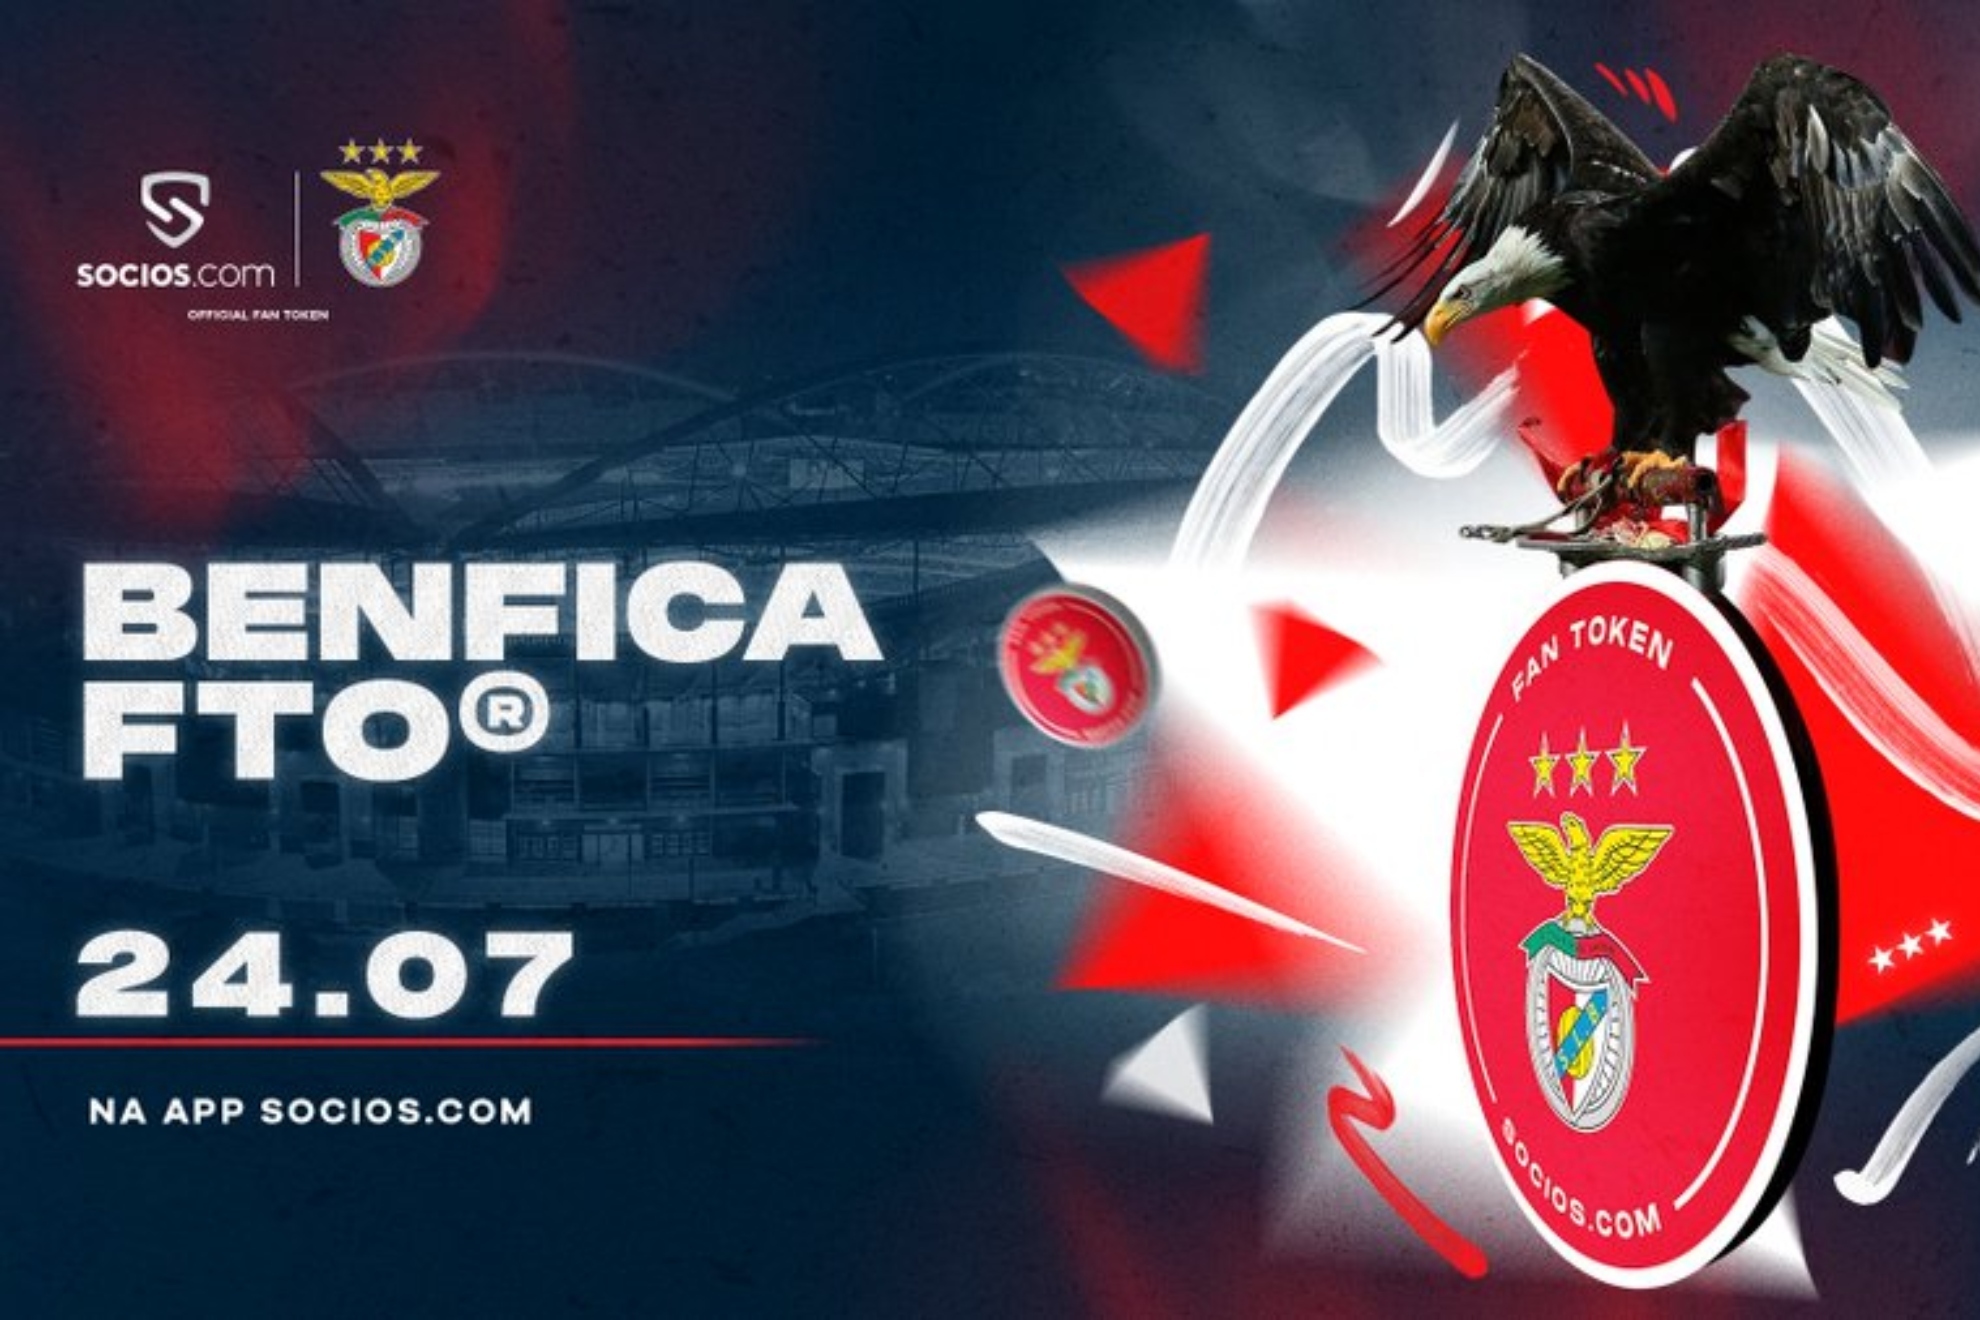 El Benfica, último club en Portugal en tener un Fan Token propio